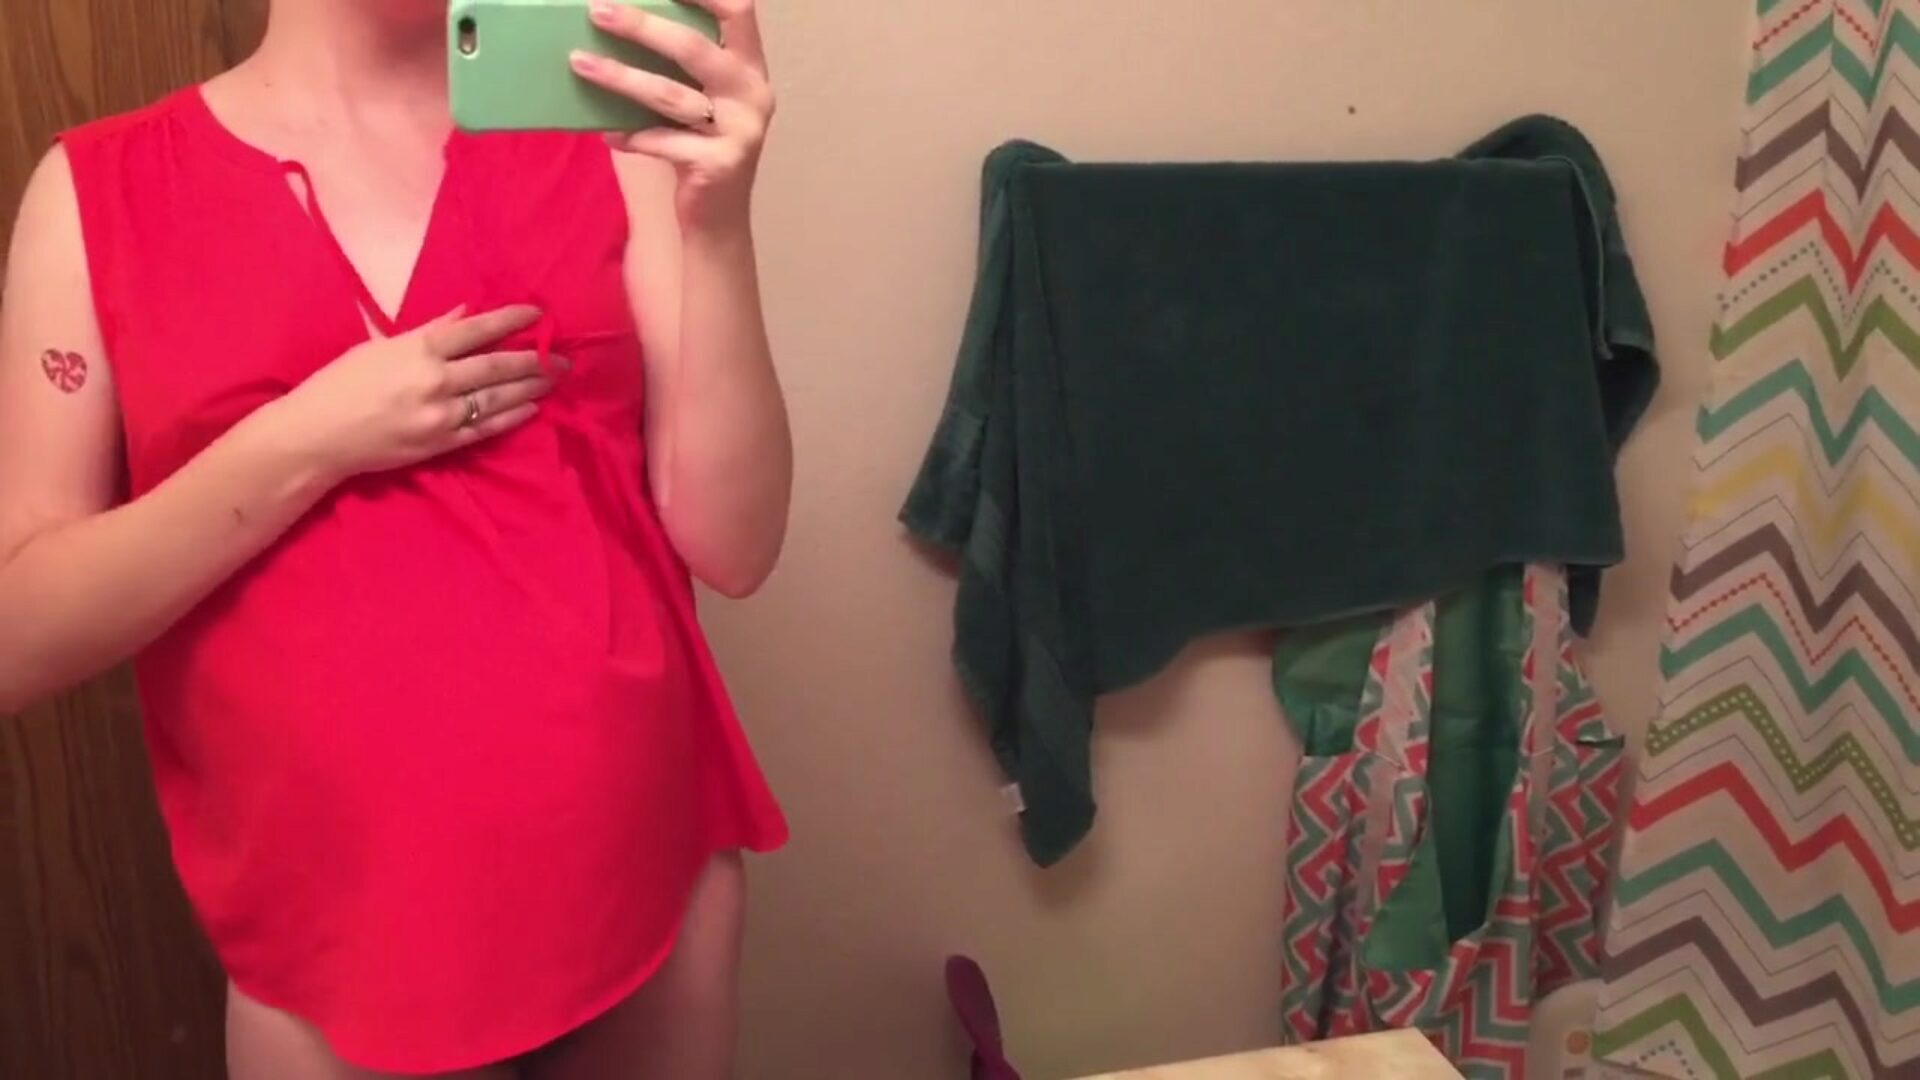 dlakava, trudna majka, voljela bih se jebati osjećajući se nervozno u kupaonici